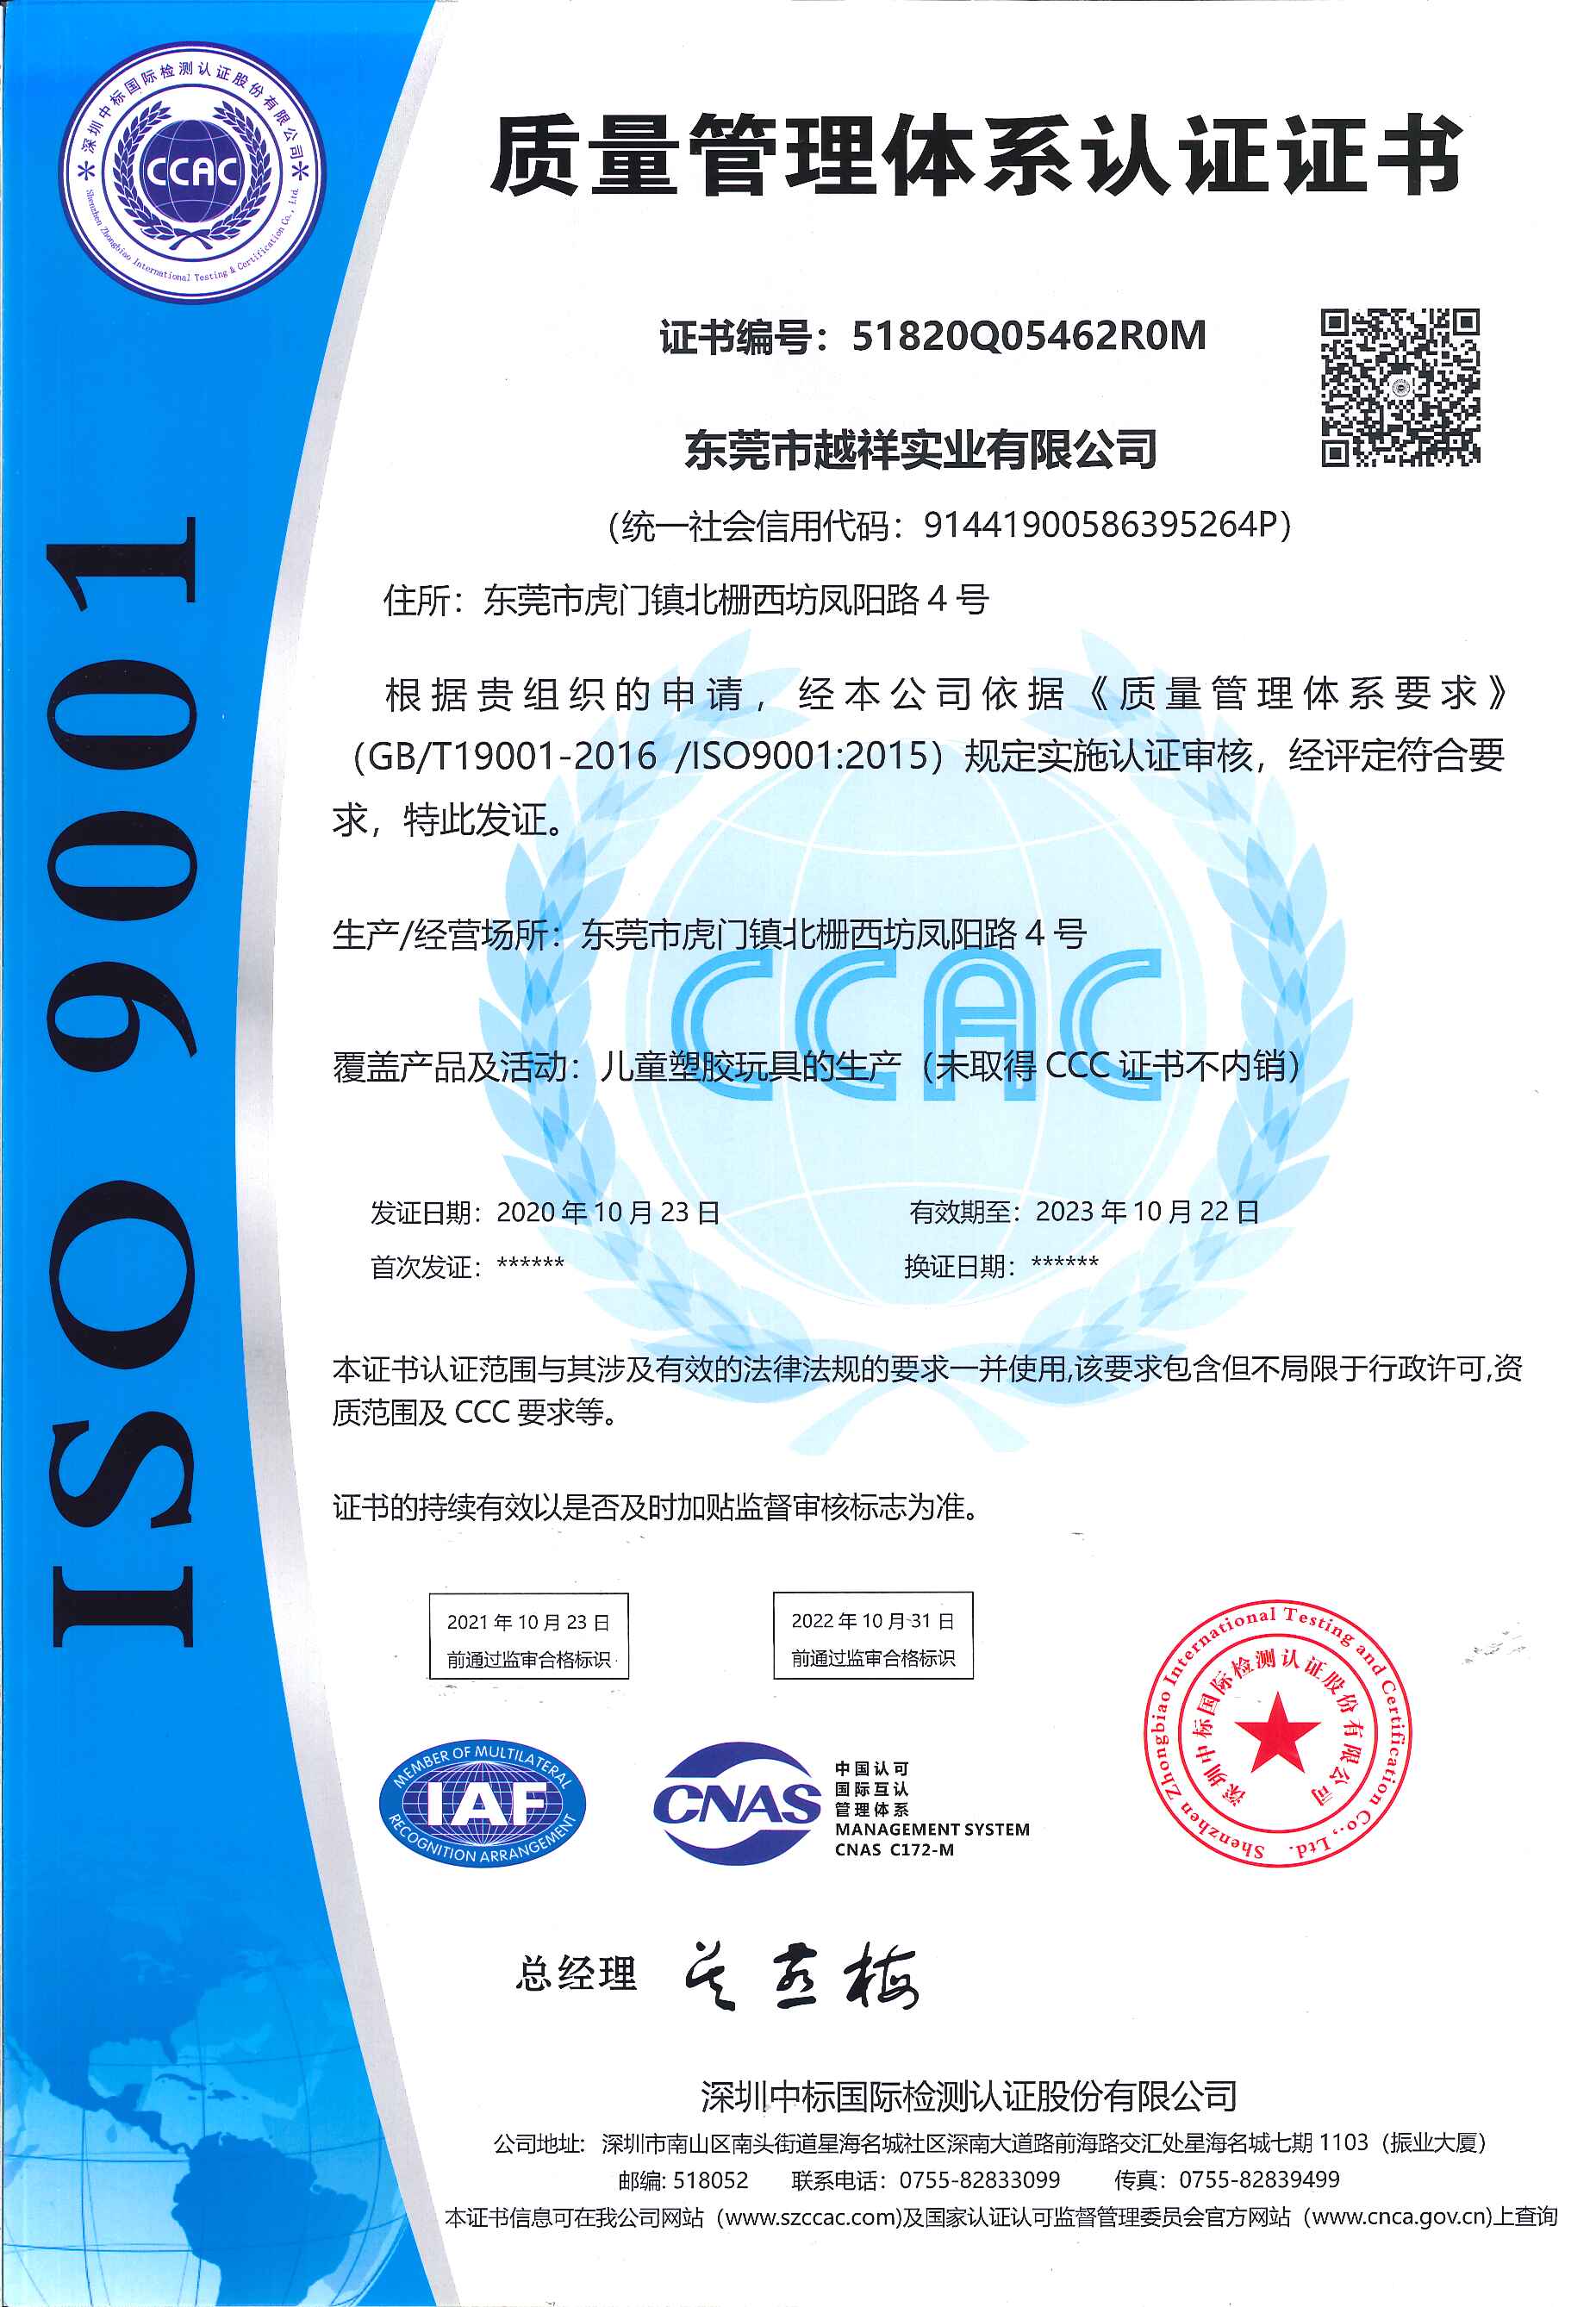 恭祝东莞市越祥实业有限公司一次性顺利通过ISO9001认证